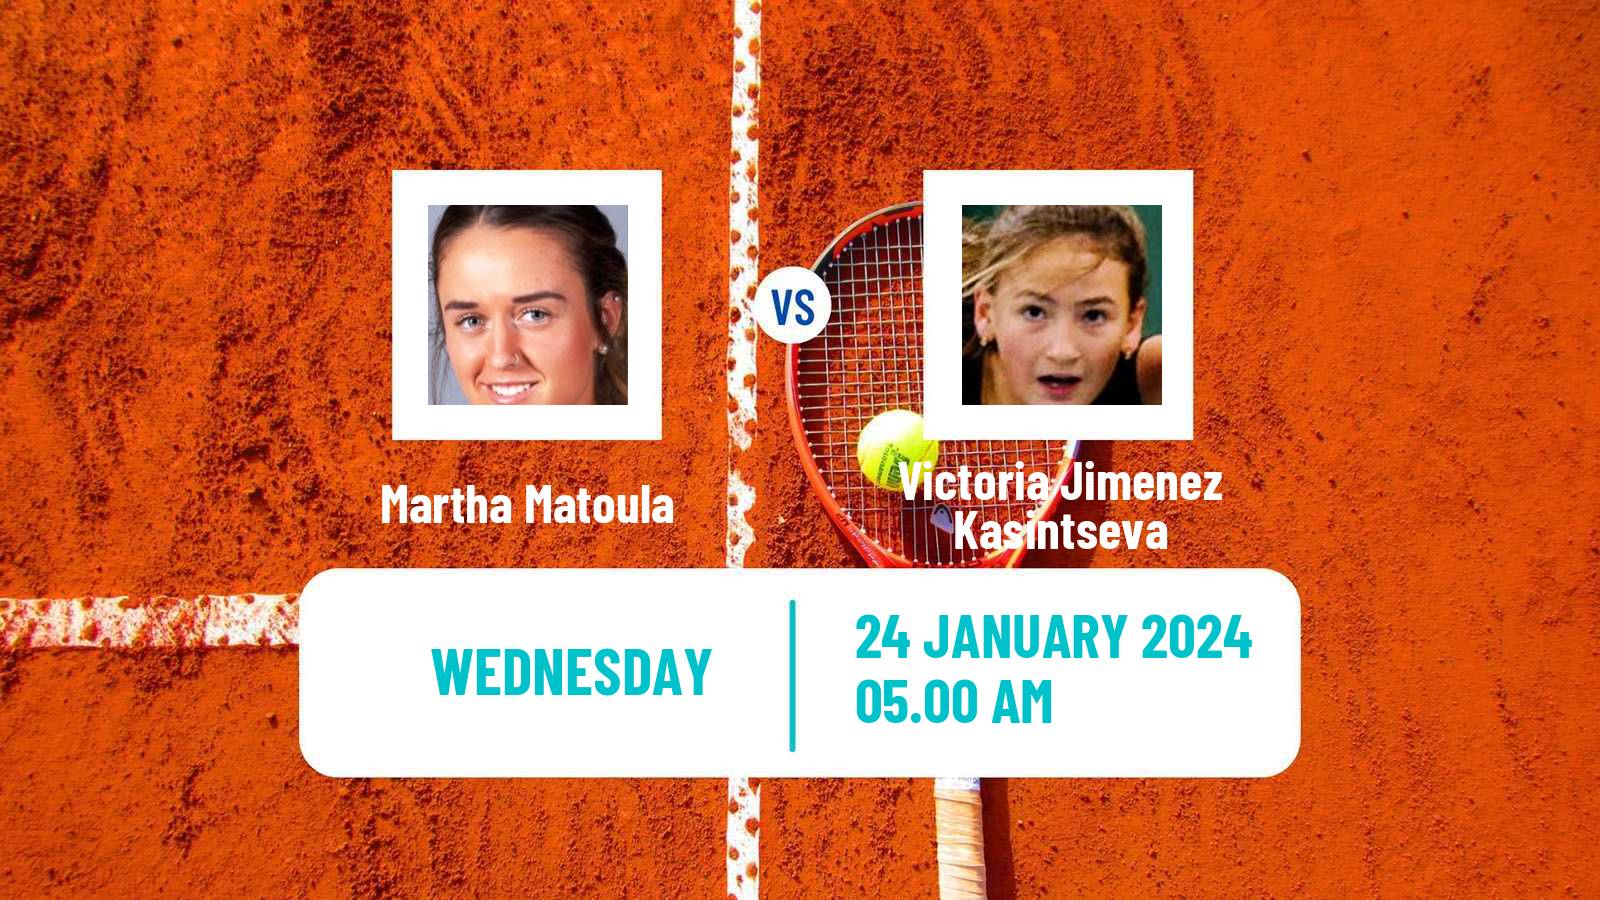 Tennis ITF W35 Monastir 2 Women Martha Matoula - Victoria Jimenez Kasintseva